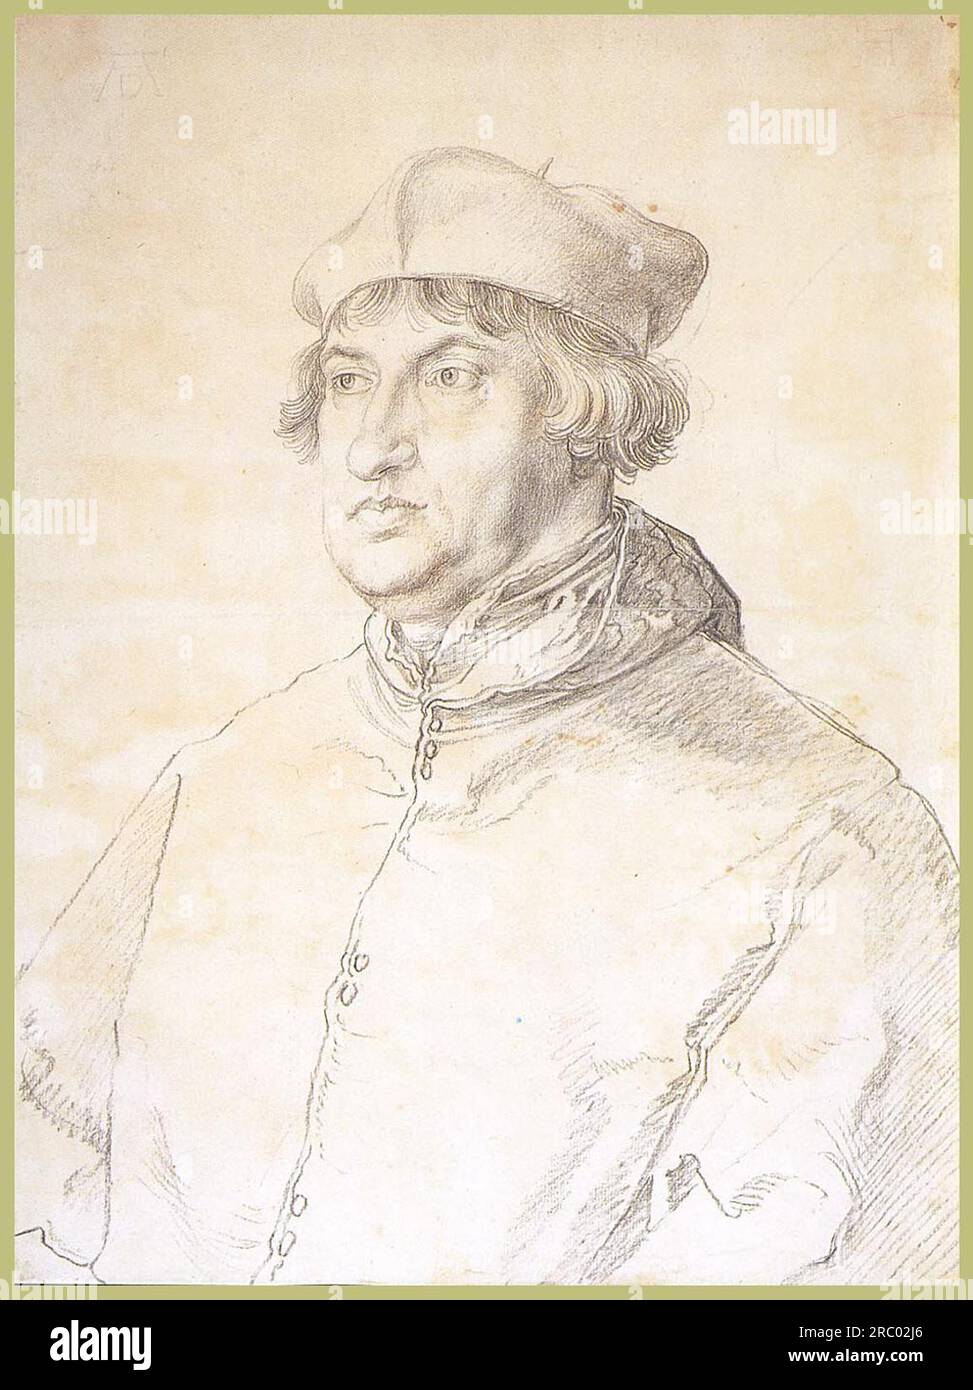 Cardinal Albrecht von Brandenburg 1519 by Albrecht Durer Stock Photo